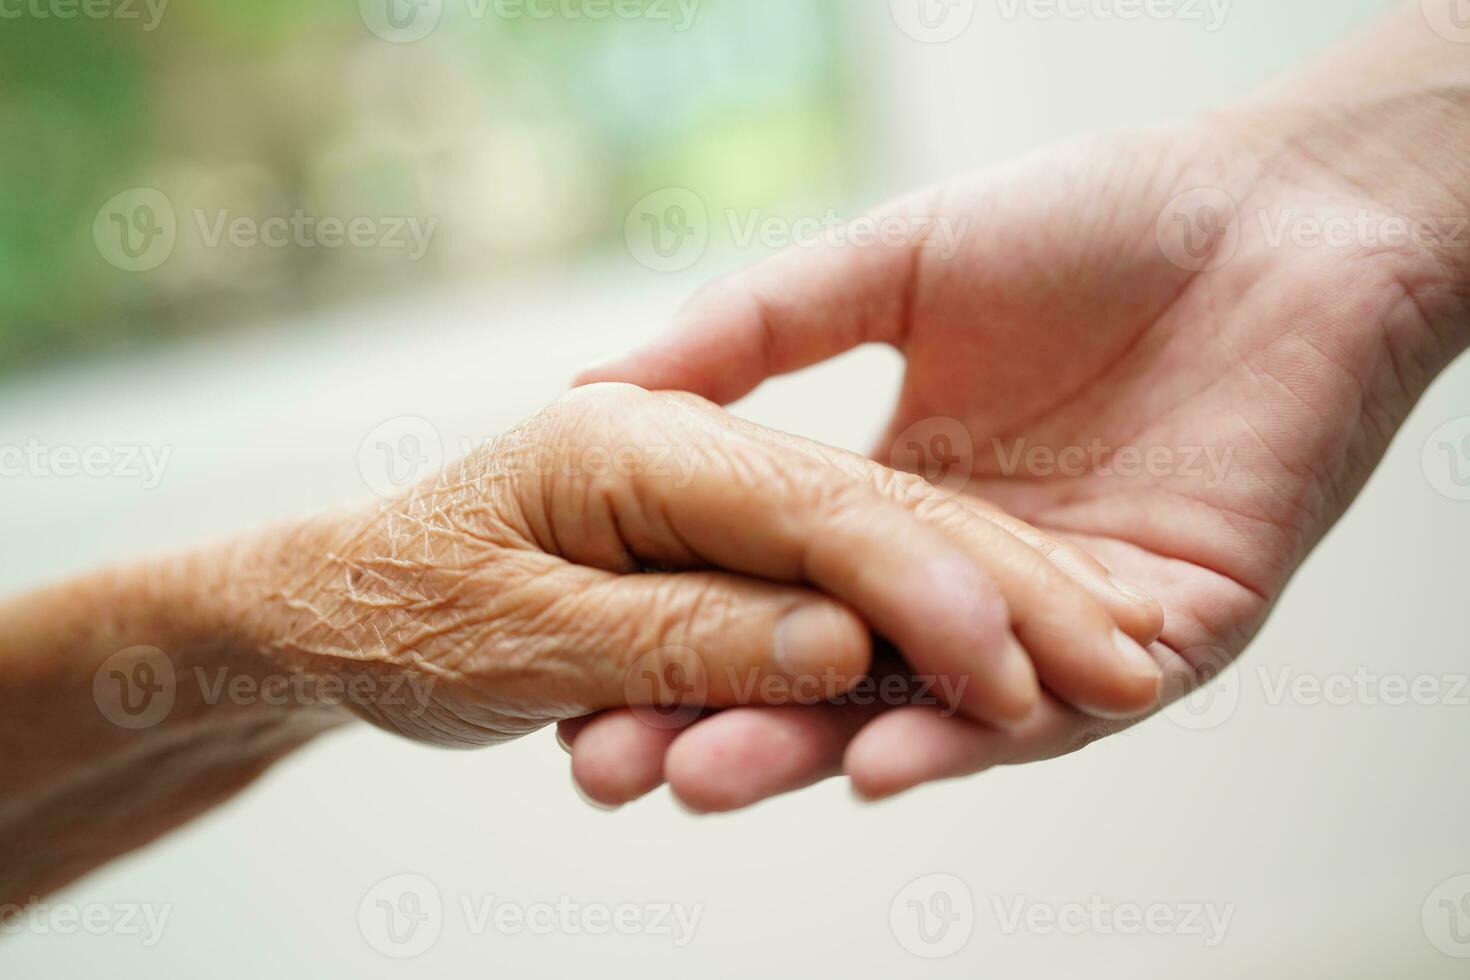 ásia jovem Garoto segurando velho avó mulher mão juntos com amor e Cuidado. foto